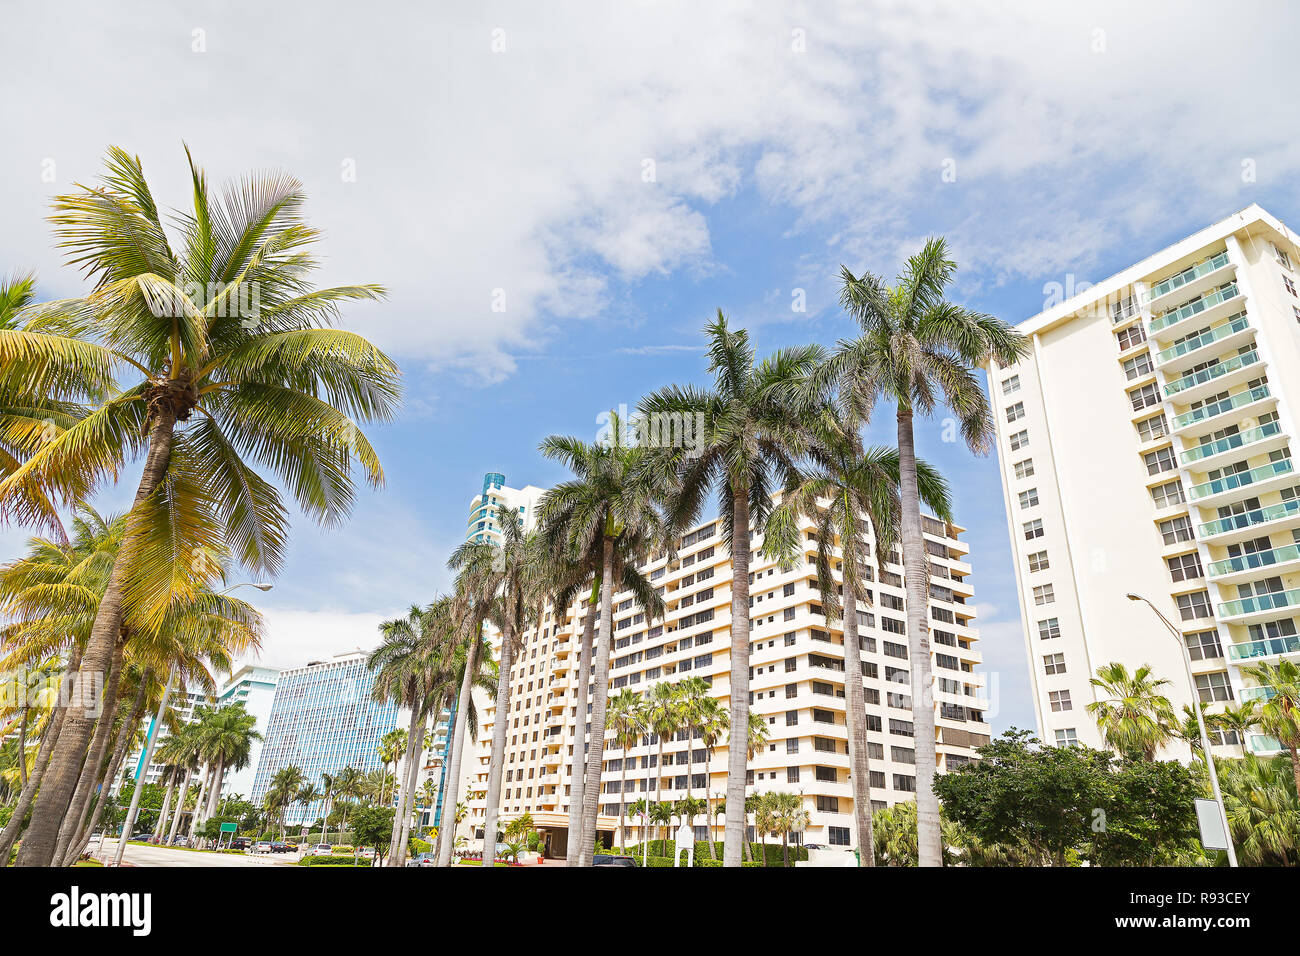 Boulevard avec de grands palmiers et de bâtiments modernes à Miami Beach, Floride. Des bâtiments et des arbres sur un après-midi ensoleillé à destination populaire. Banque D'Images